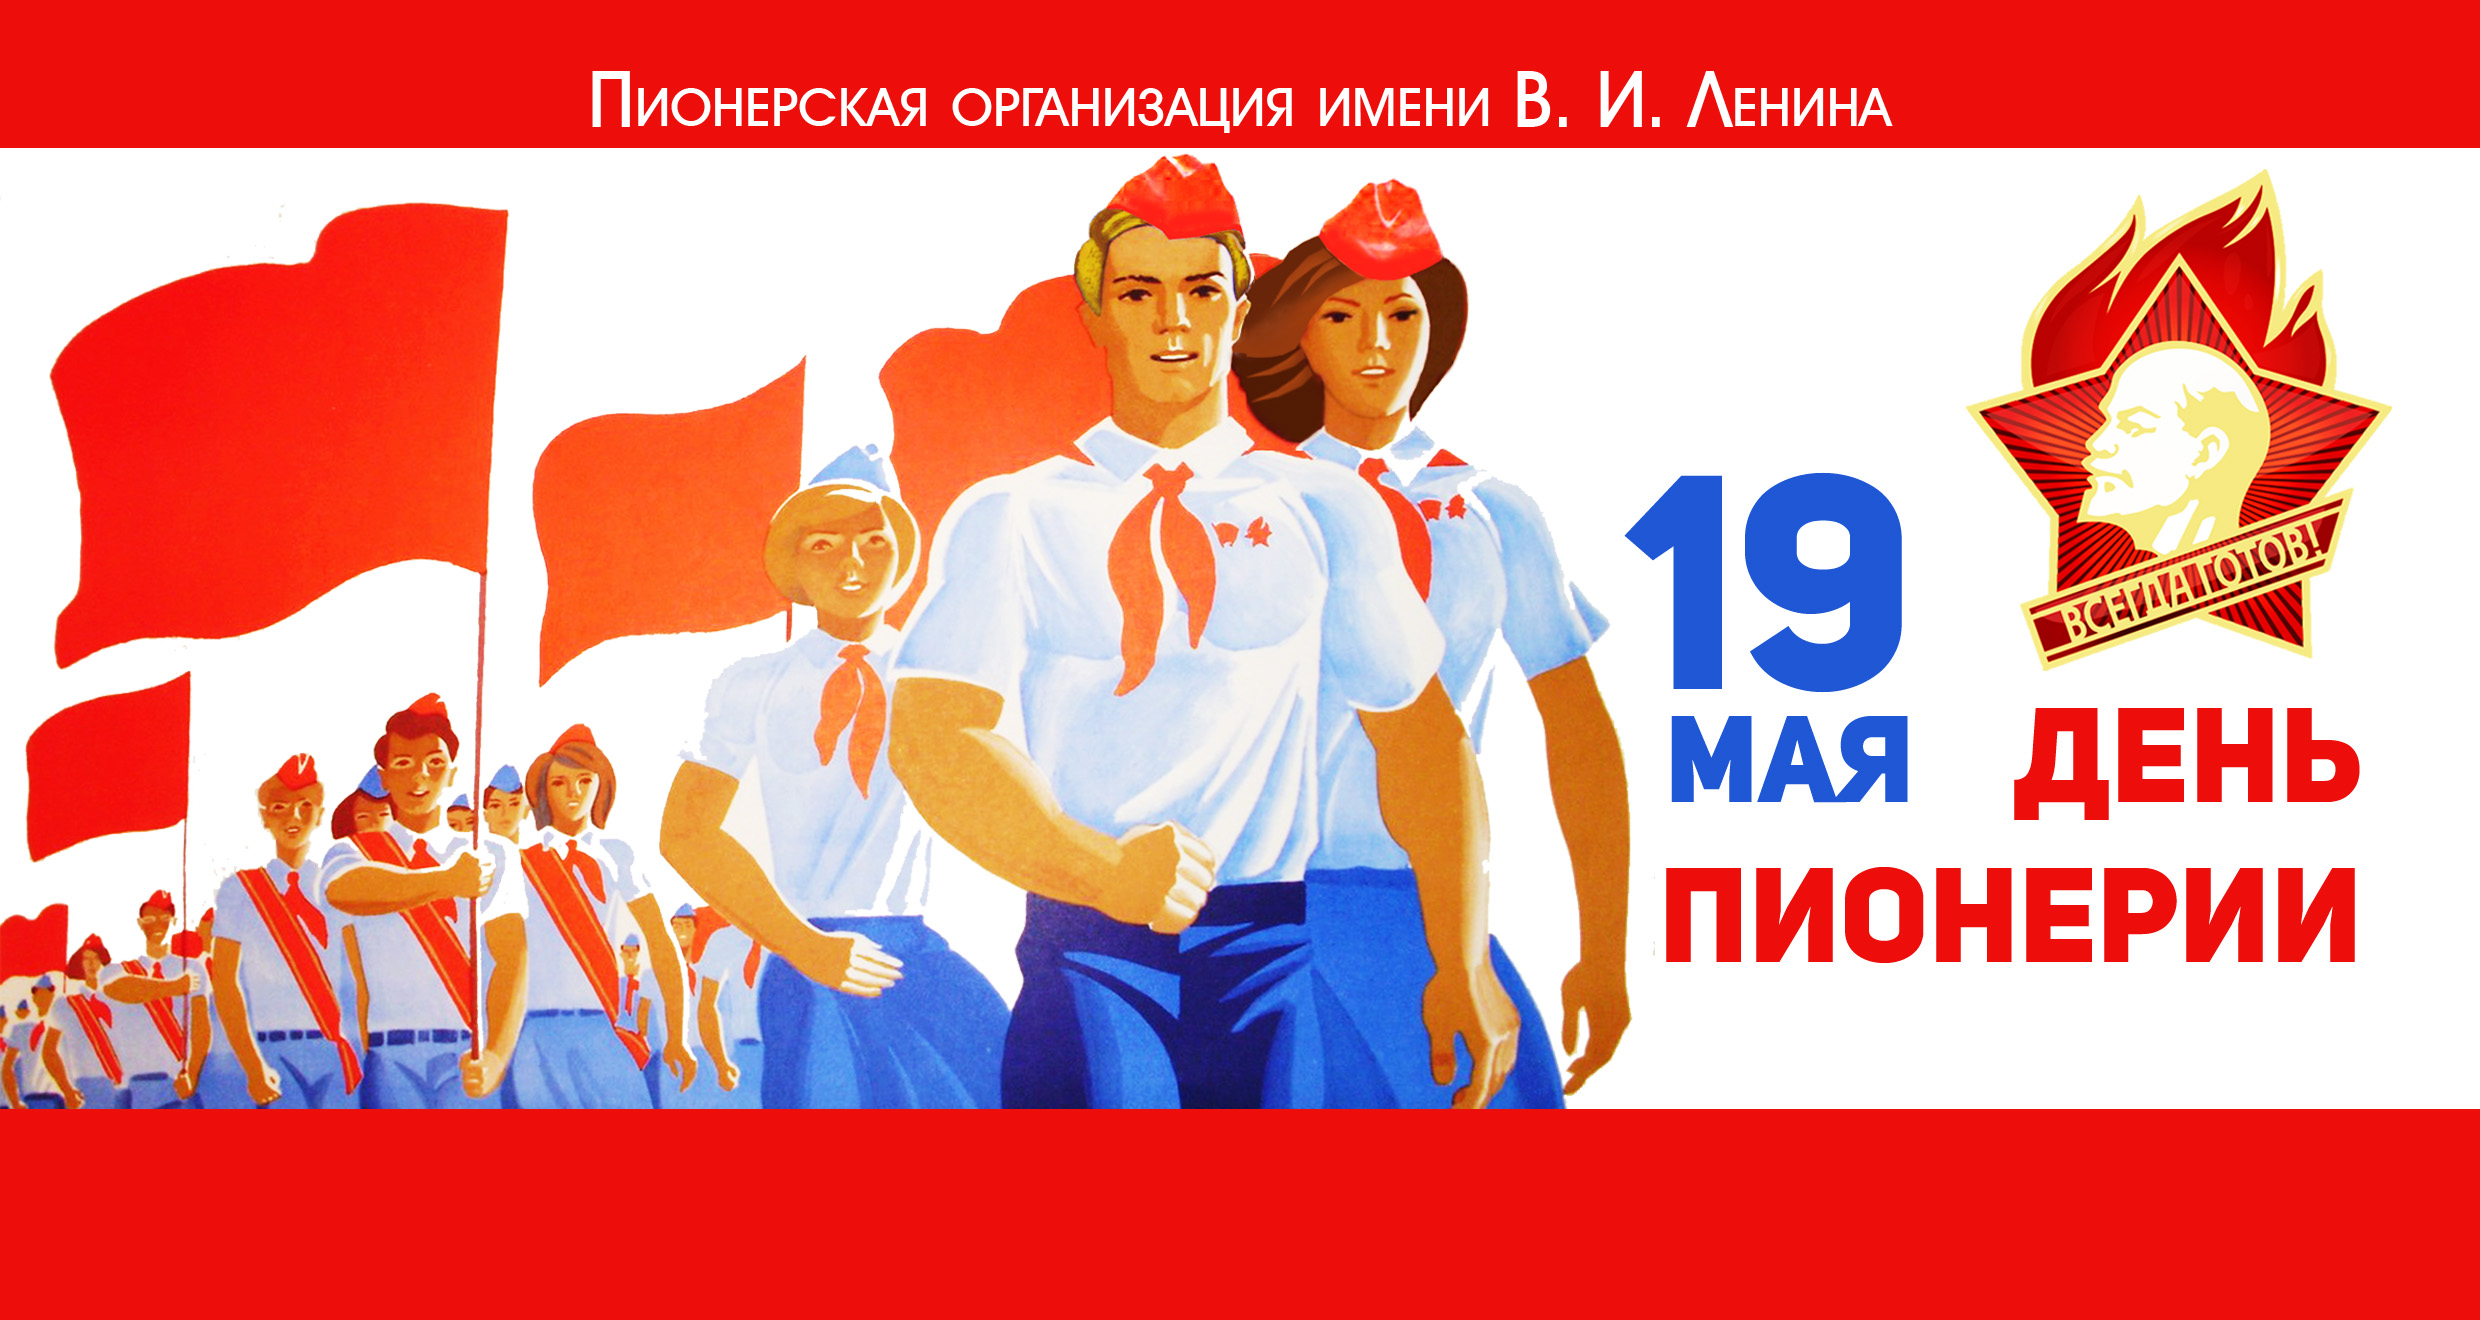 Мама я хочу быть пионером. Дата рождения Пионерской организации в СССР. День пионерии. 19 Мая день пионерии. День пи.